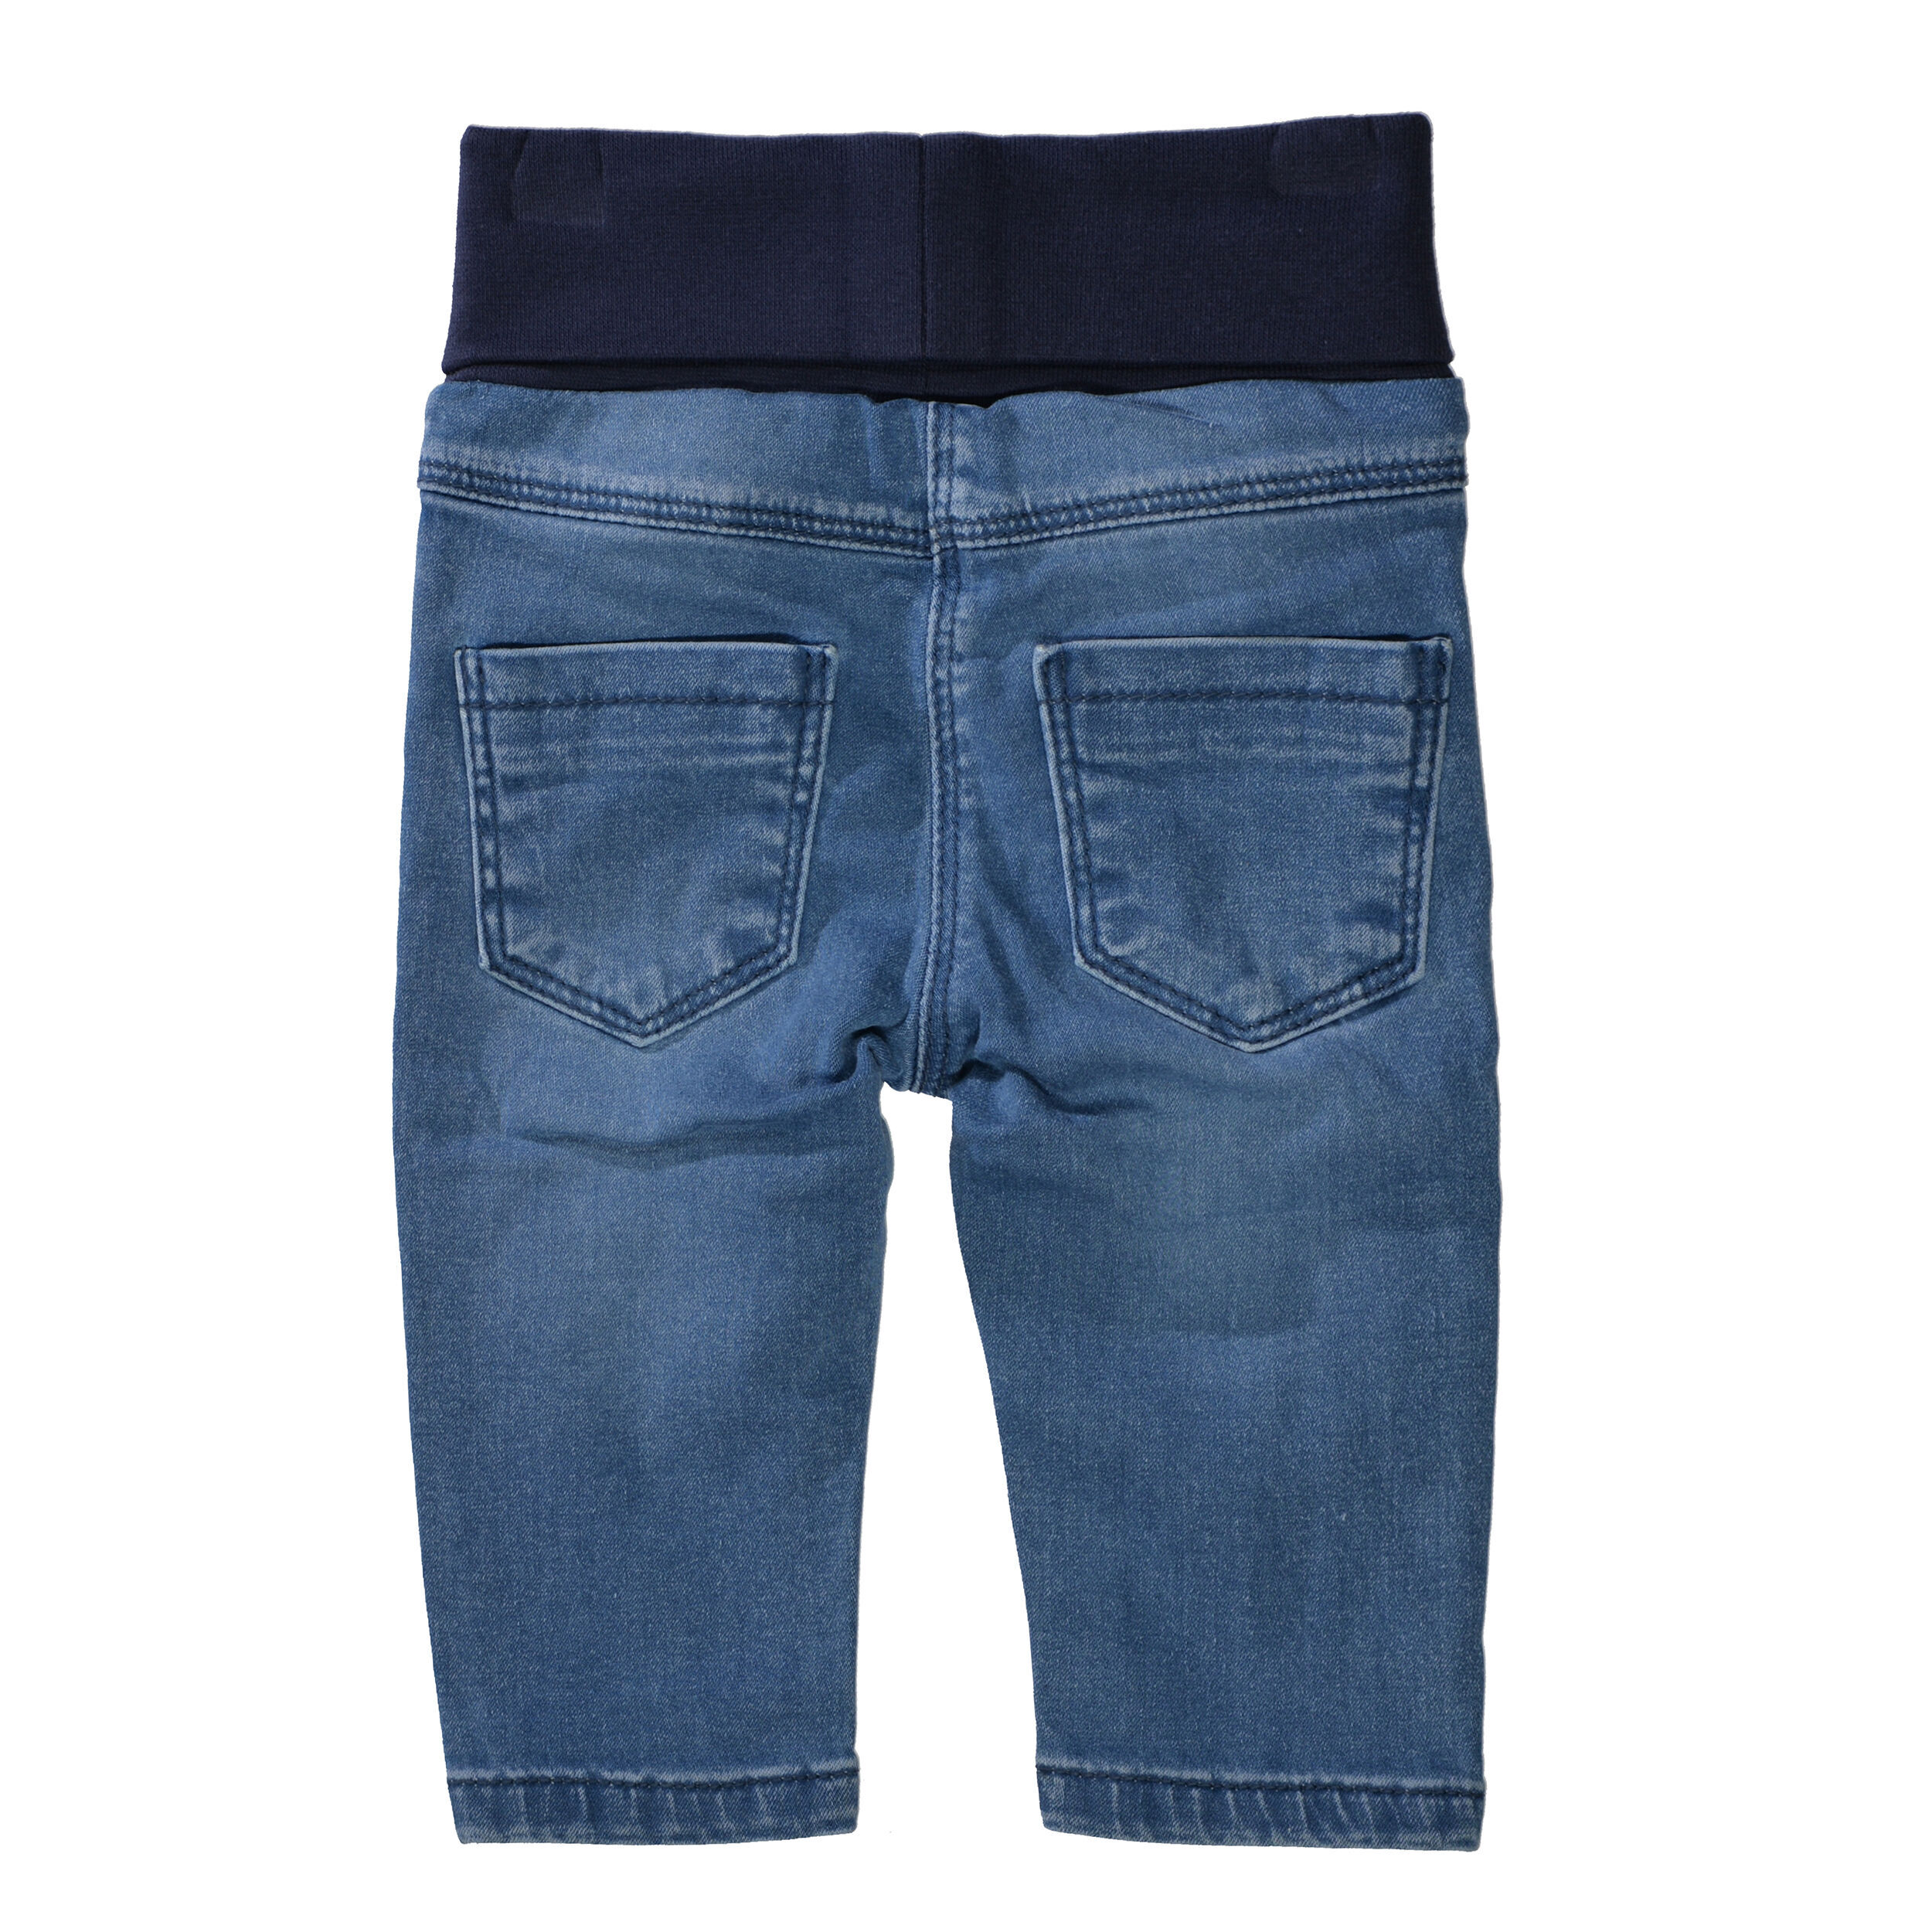 Jeans mit elastischem Umschlag-Bund